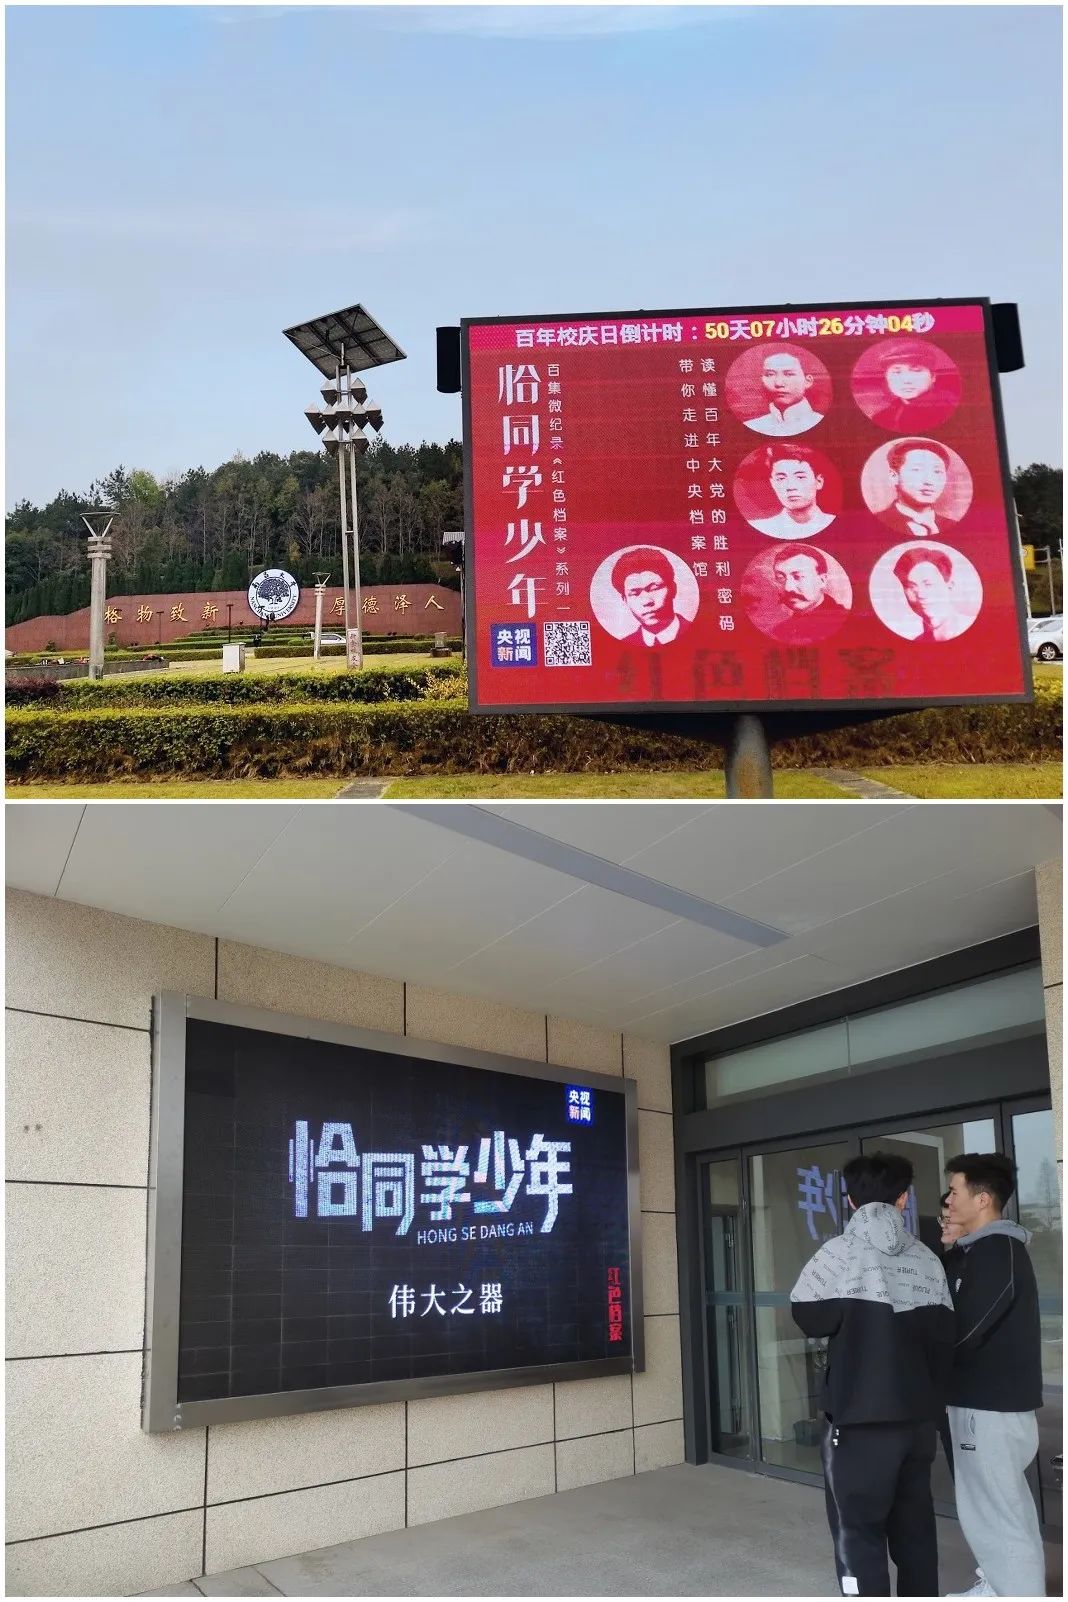 △南昌大学、南京理工大学播放央视新闻微纪录片《红色档案》并张贴海报。